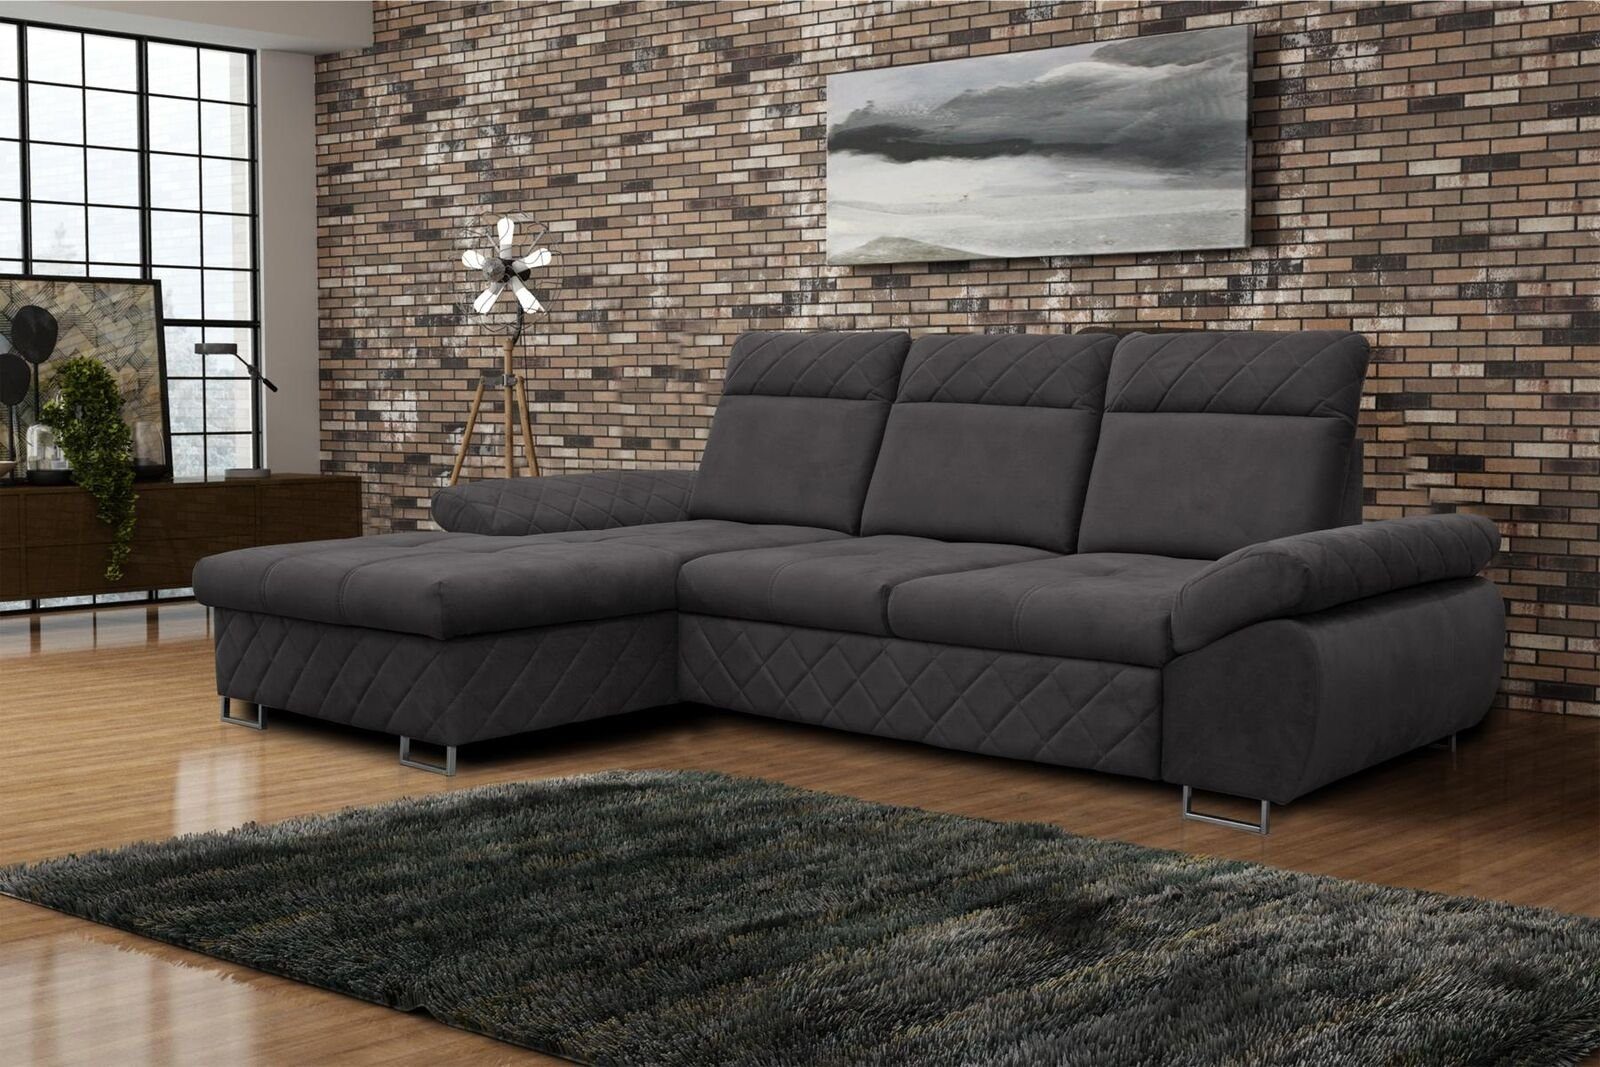 JVmoebel Ecksofa Wohnzimmer Textil L-Form Sofas Braune Ecksofa Couch Polstermöbel, Mit Bettfunktion Grau